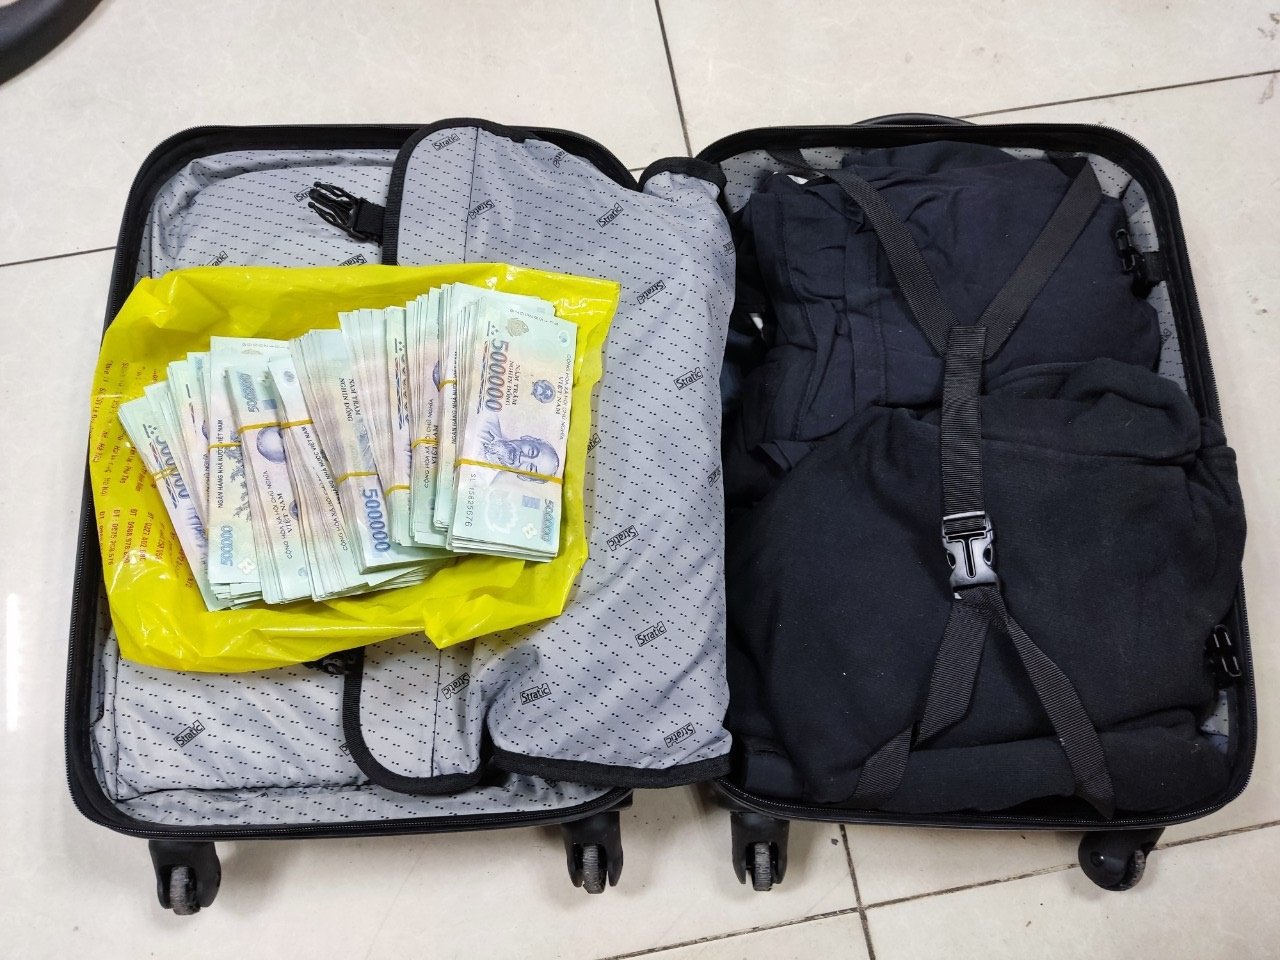 Chiếc vali chứa tới 1.000 tờ tiền mệnh giá 500.000 đồng (tương đương 500 triệu đồng)